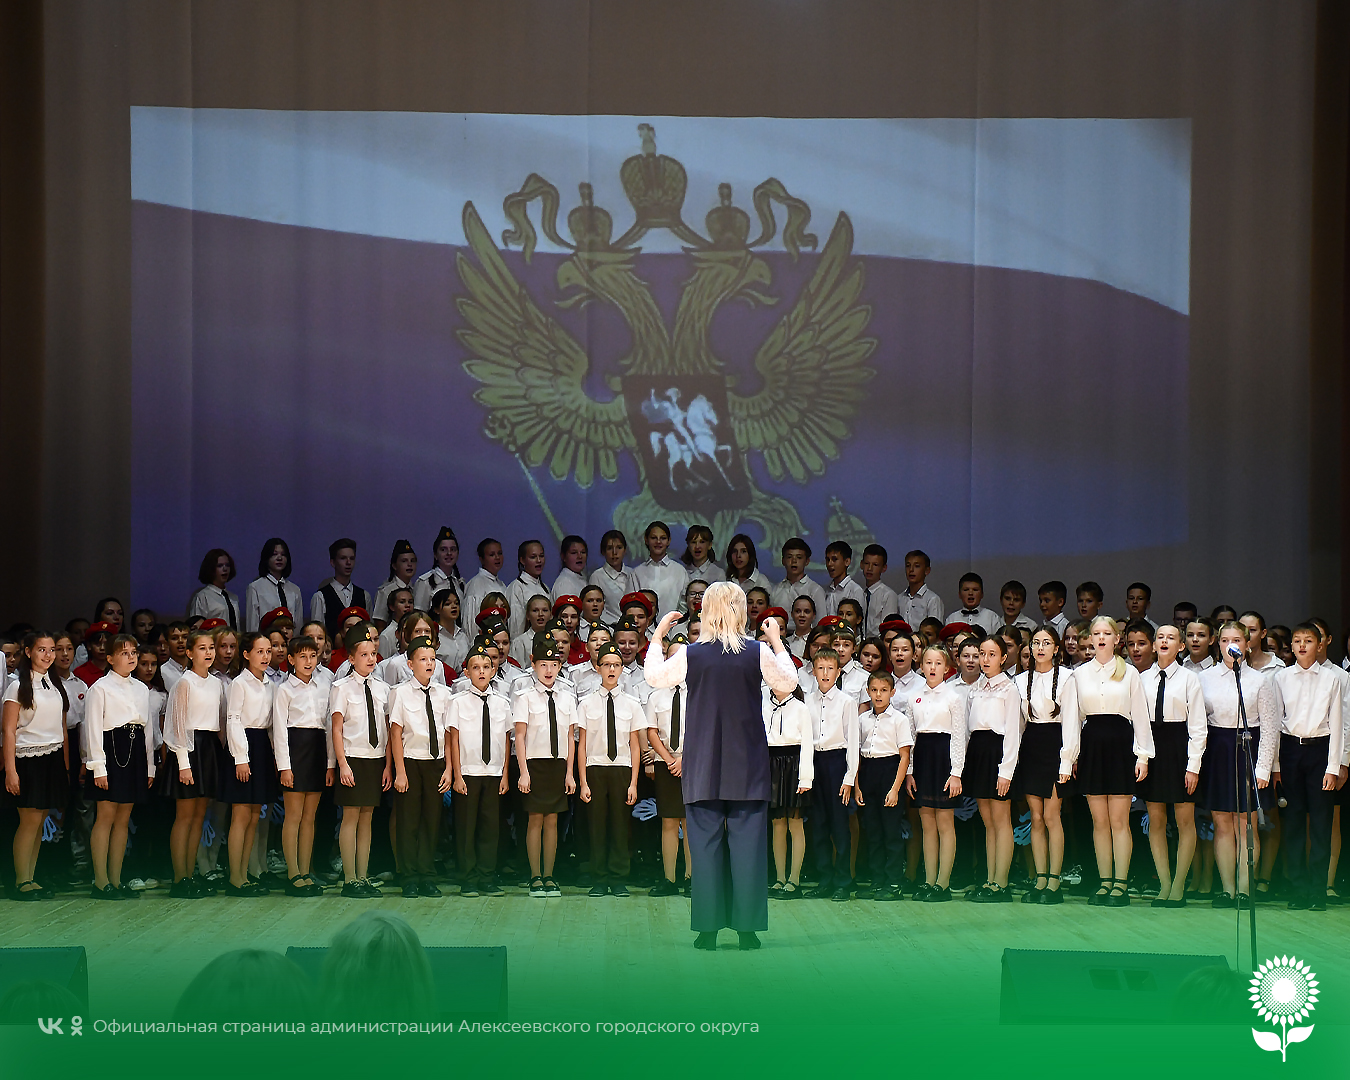 В «ЦКР «Солнечный» состоялся праздничный концерт посвященный Дню учителя.